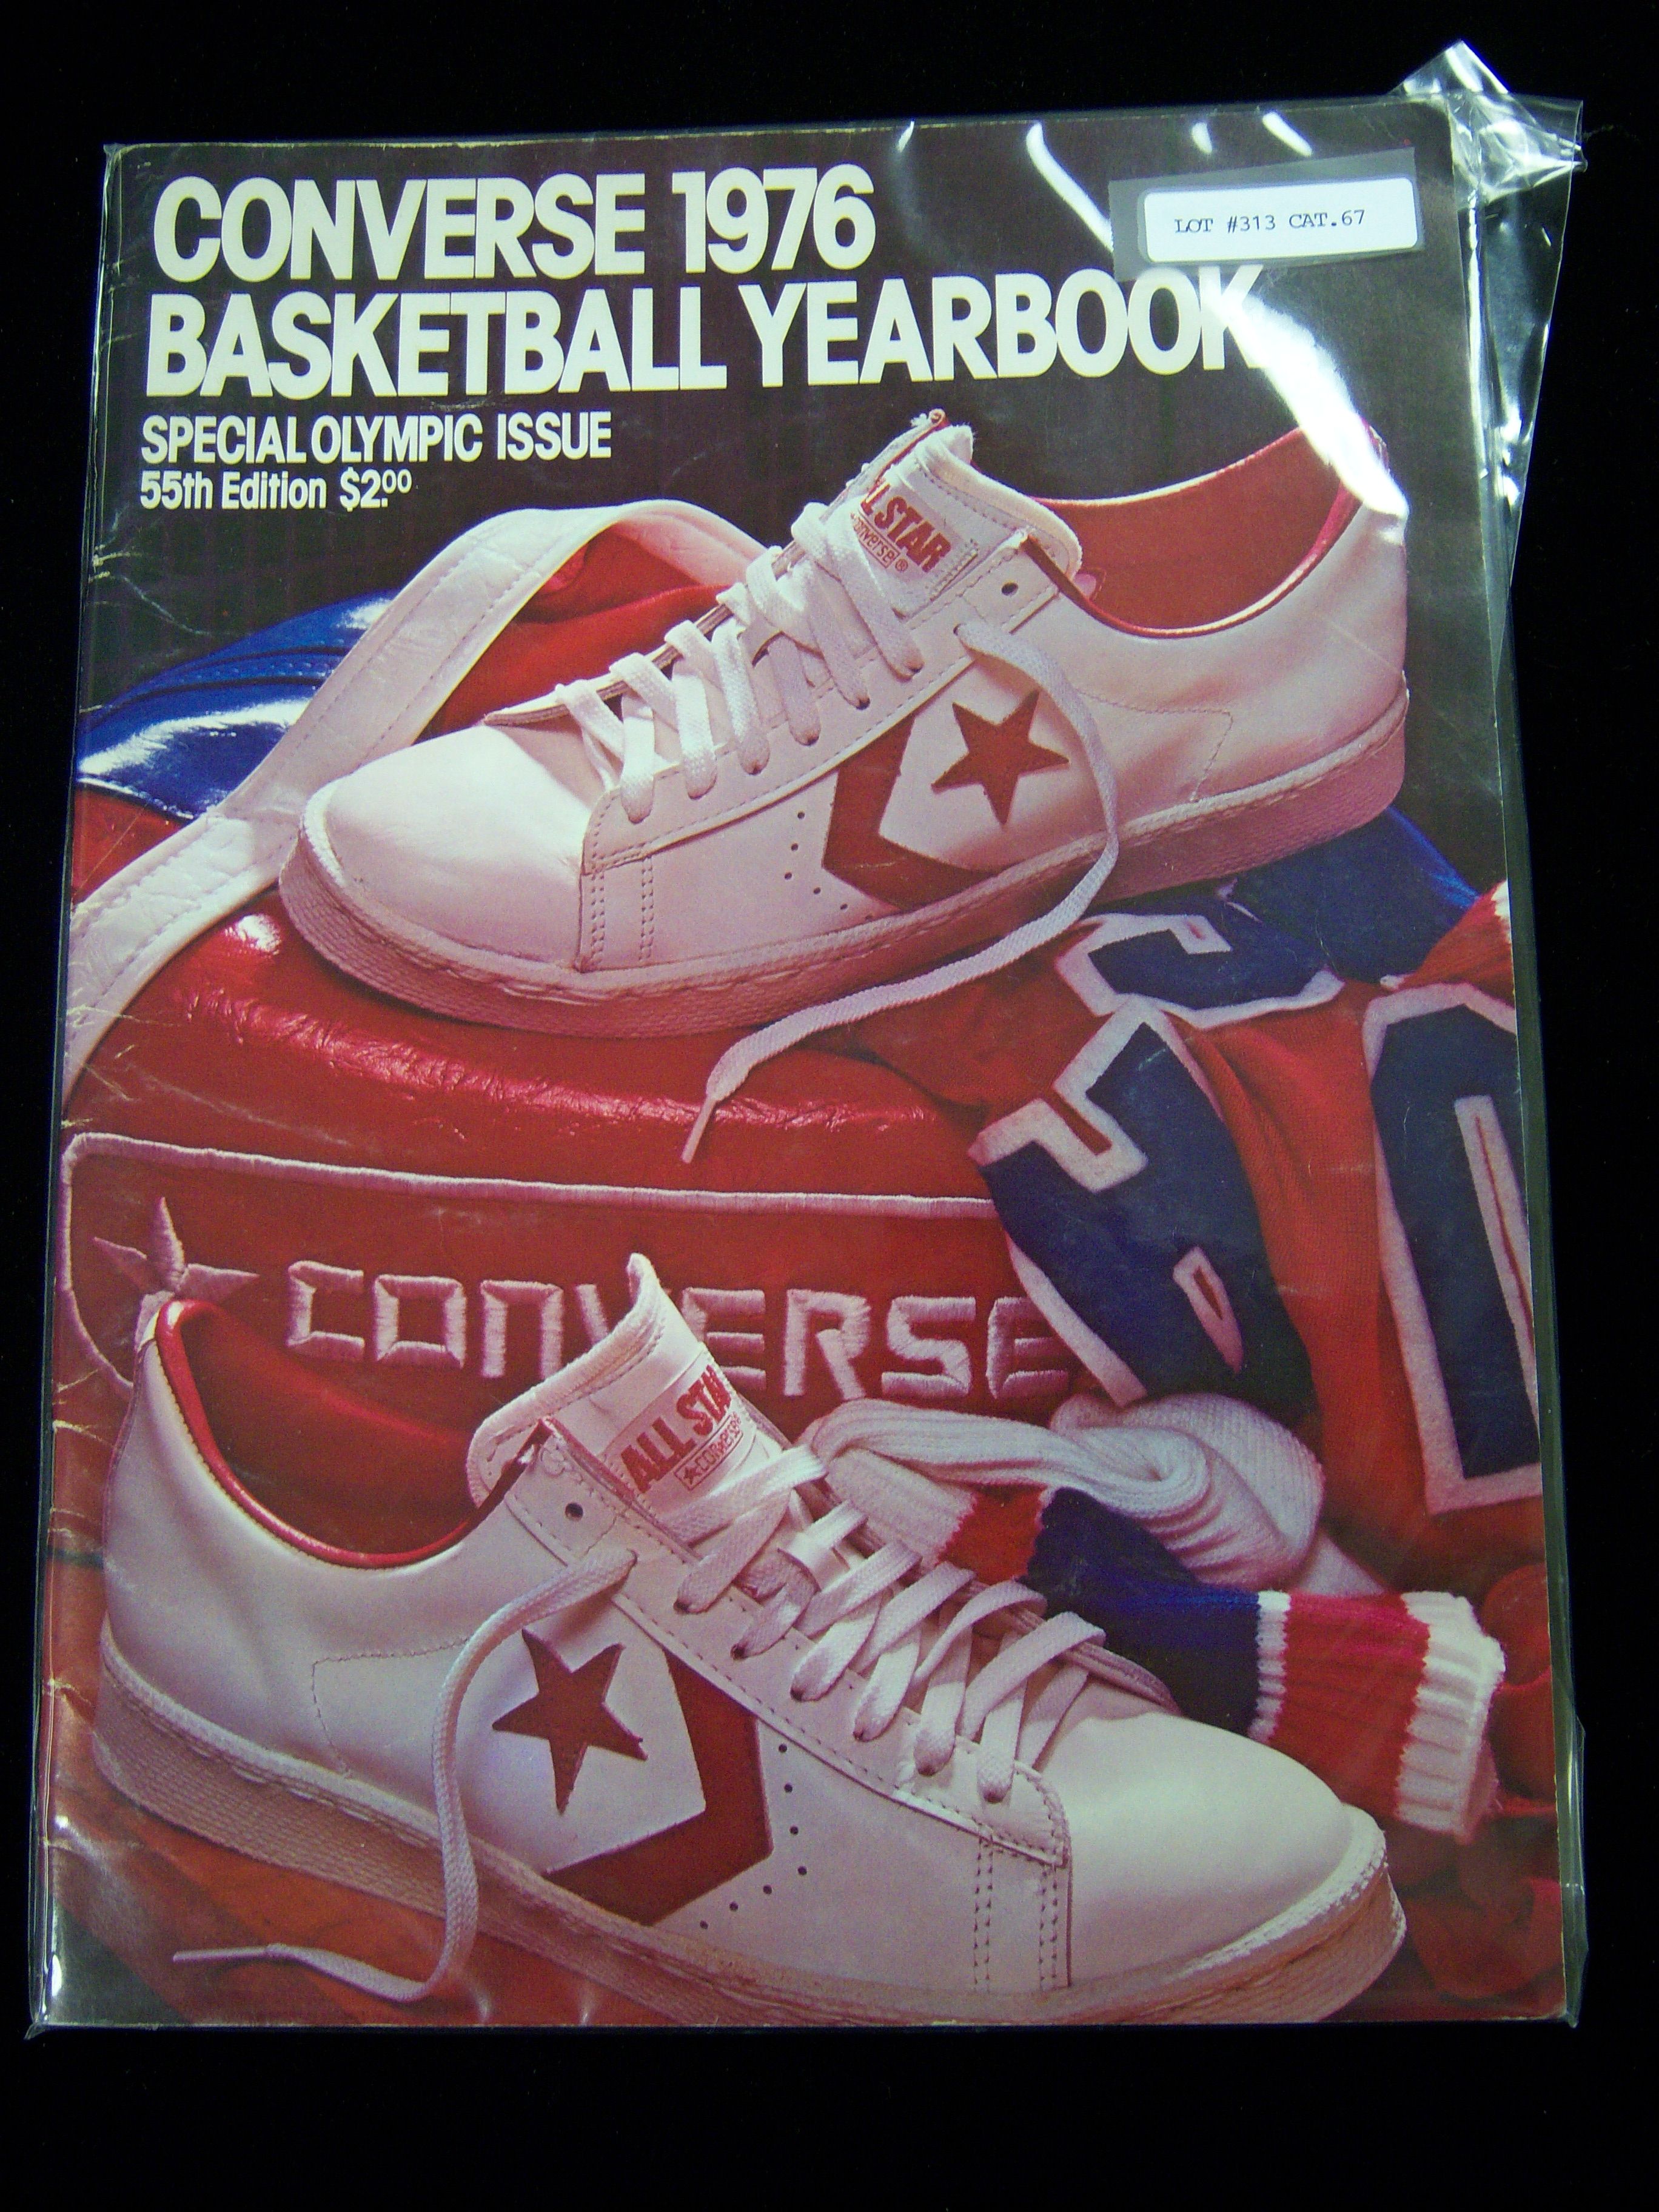 Palmadita valor exprimir Lot Detail - 1976 Converse Basketball Yearbook